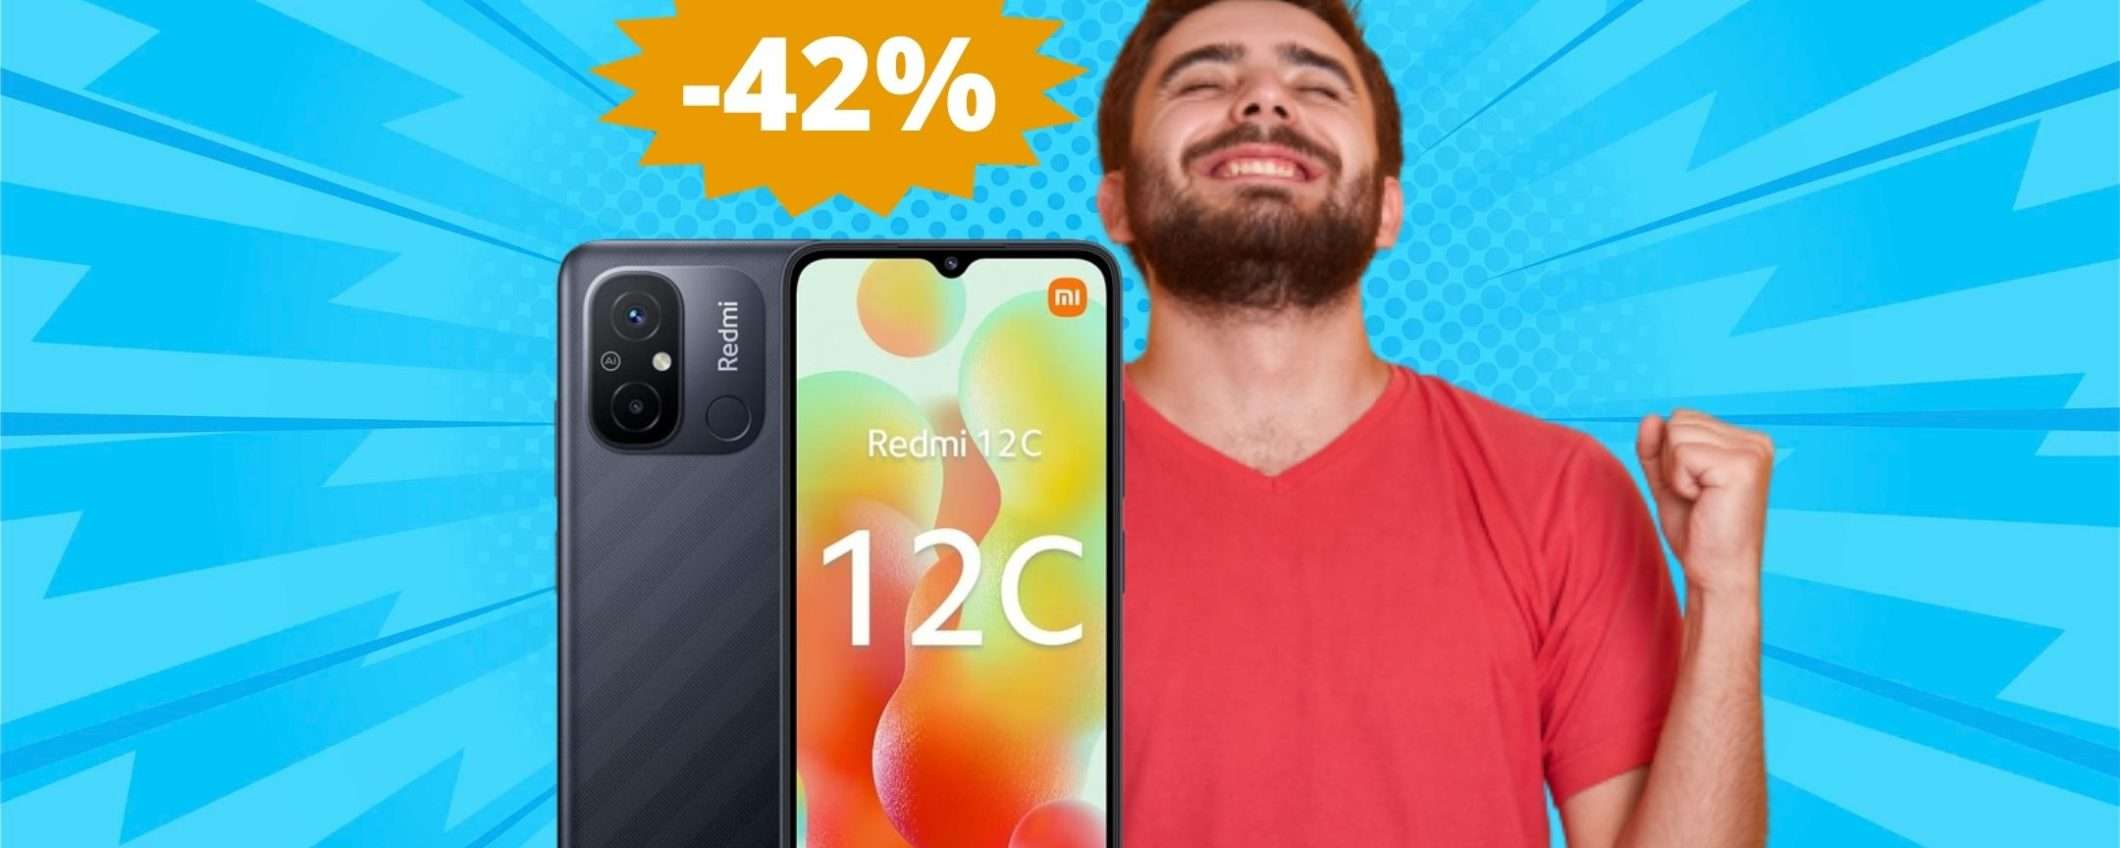 Xiaomi Redmi 12C: AFFARE irresistibile su Amazon (-42%)